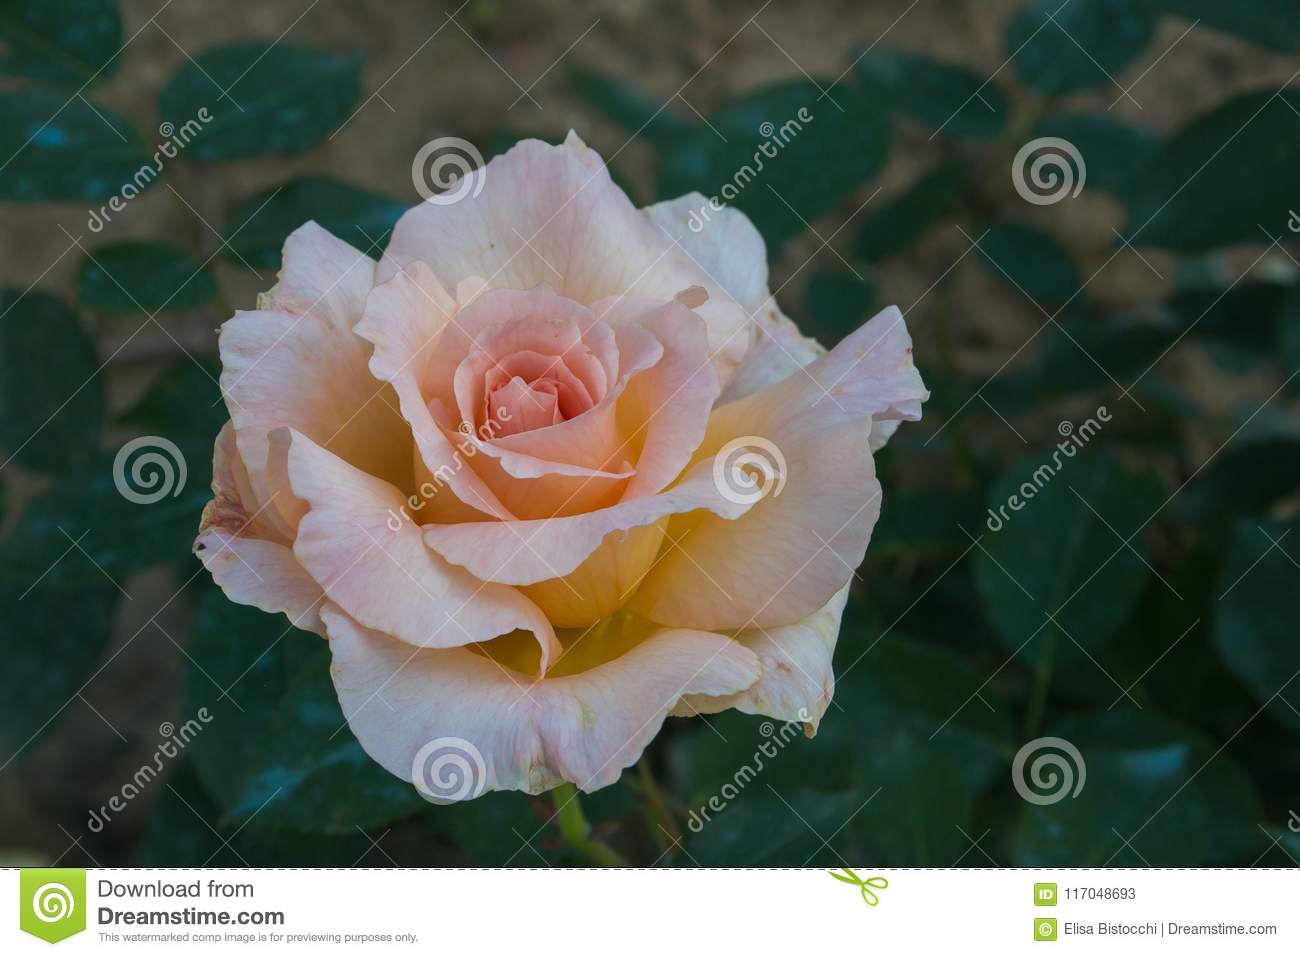 Bilder Garten Einzigartig Close Up Od Delicate Pink Pastel Rose In the Garden Stock